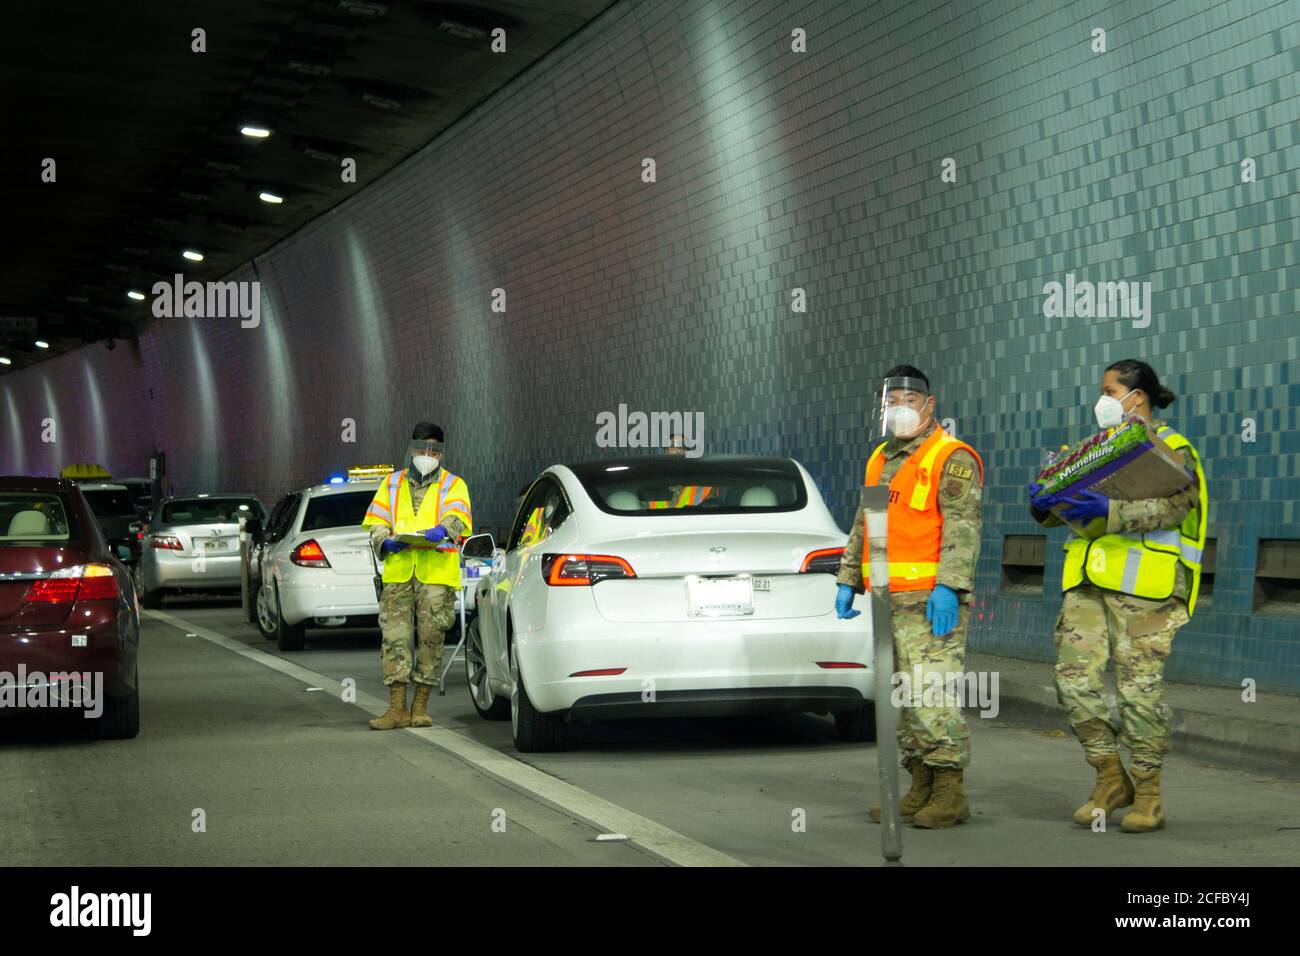 Militärpersonal in persönlicher Schutzausrüstung hilft bei der Durchführung von COVID-19-Massentests im Tunnel an der H3-Autobahn, Oahu, Hawaii, USA Stockfoto